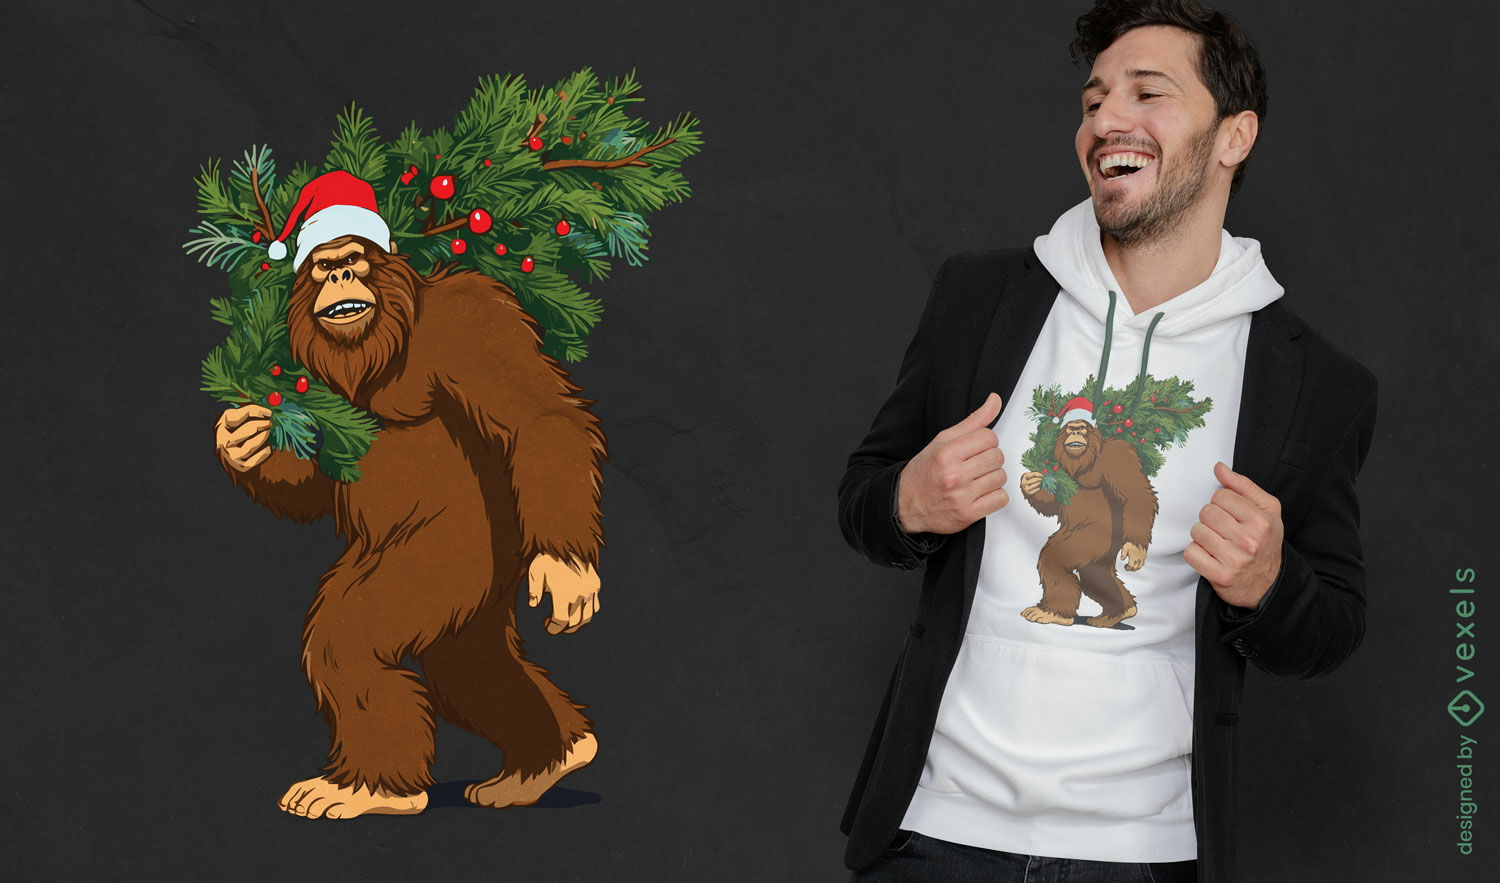 Dise?o de camiseta navide?a con tem?tica de Bigfoot.